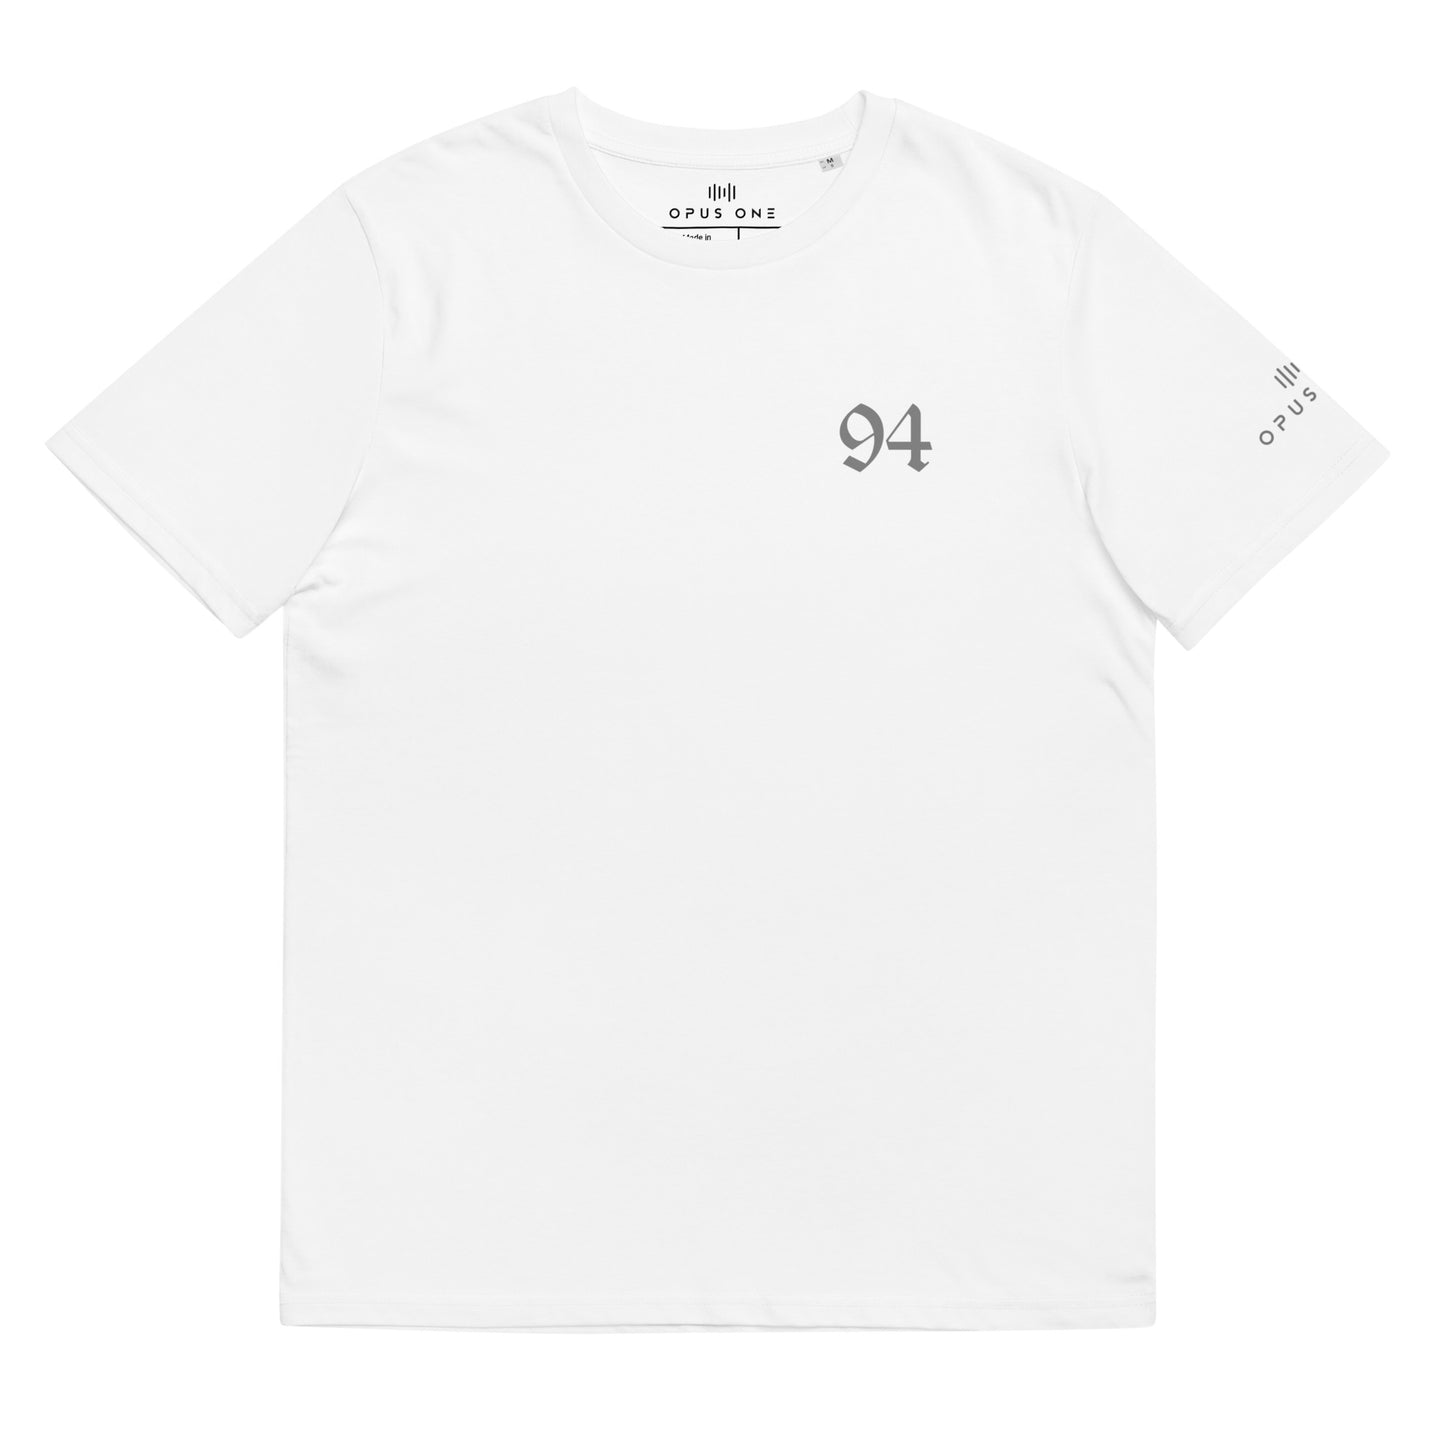 D&B (94 v1) Unisex organic cotton t-shirt (Grey Text)